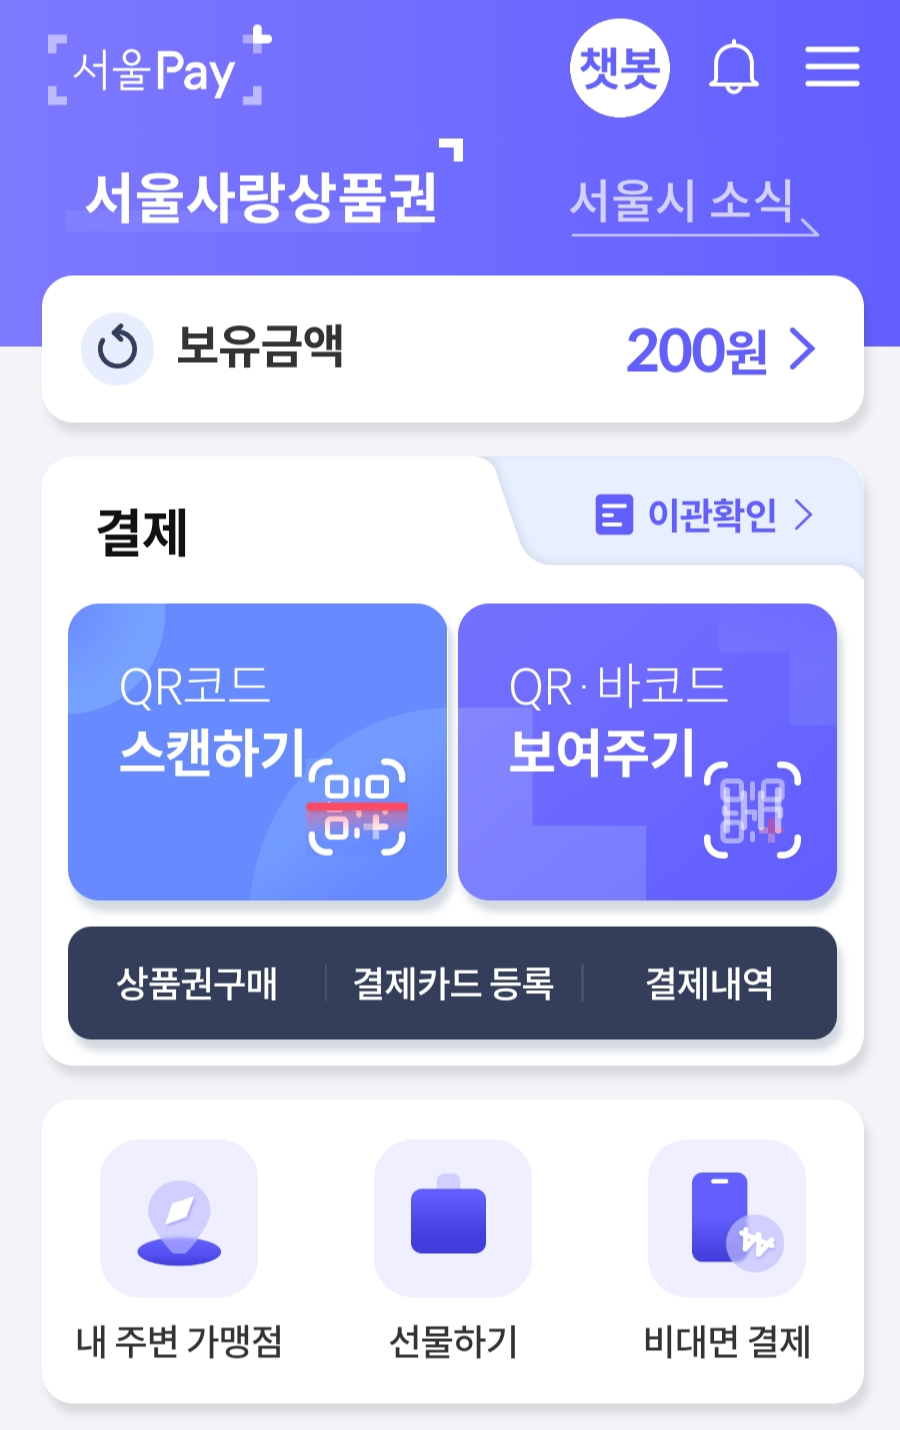 서울사랑상품권 서울페이 발행일정